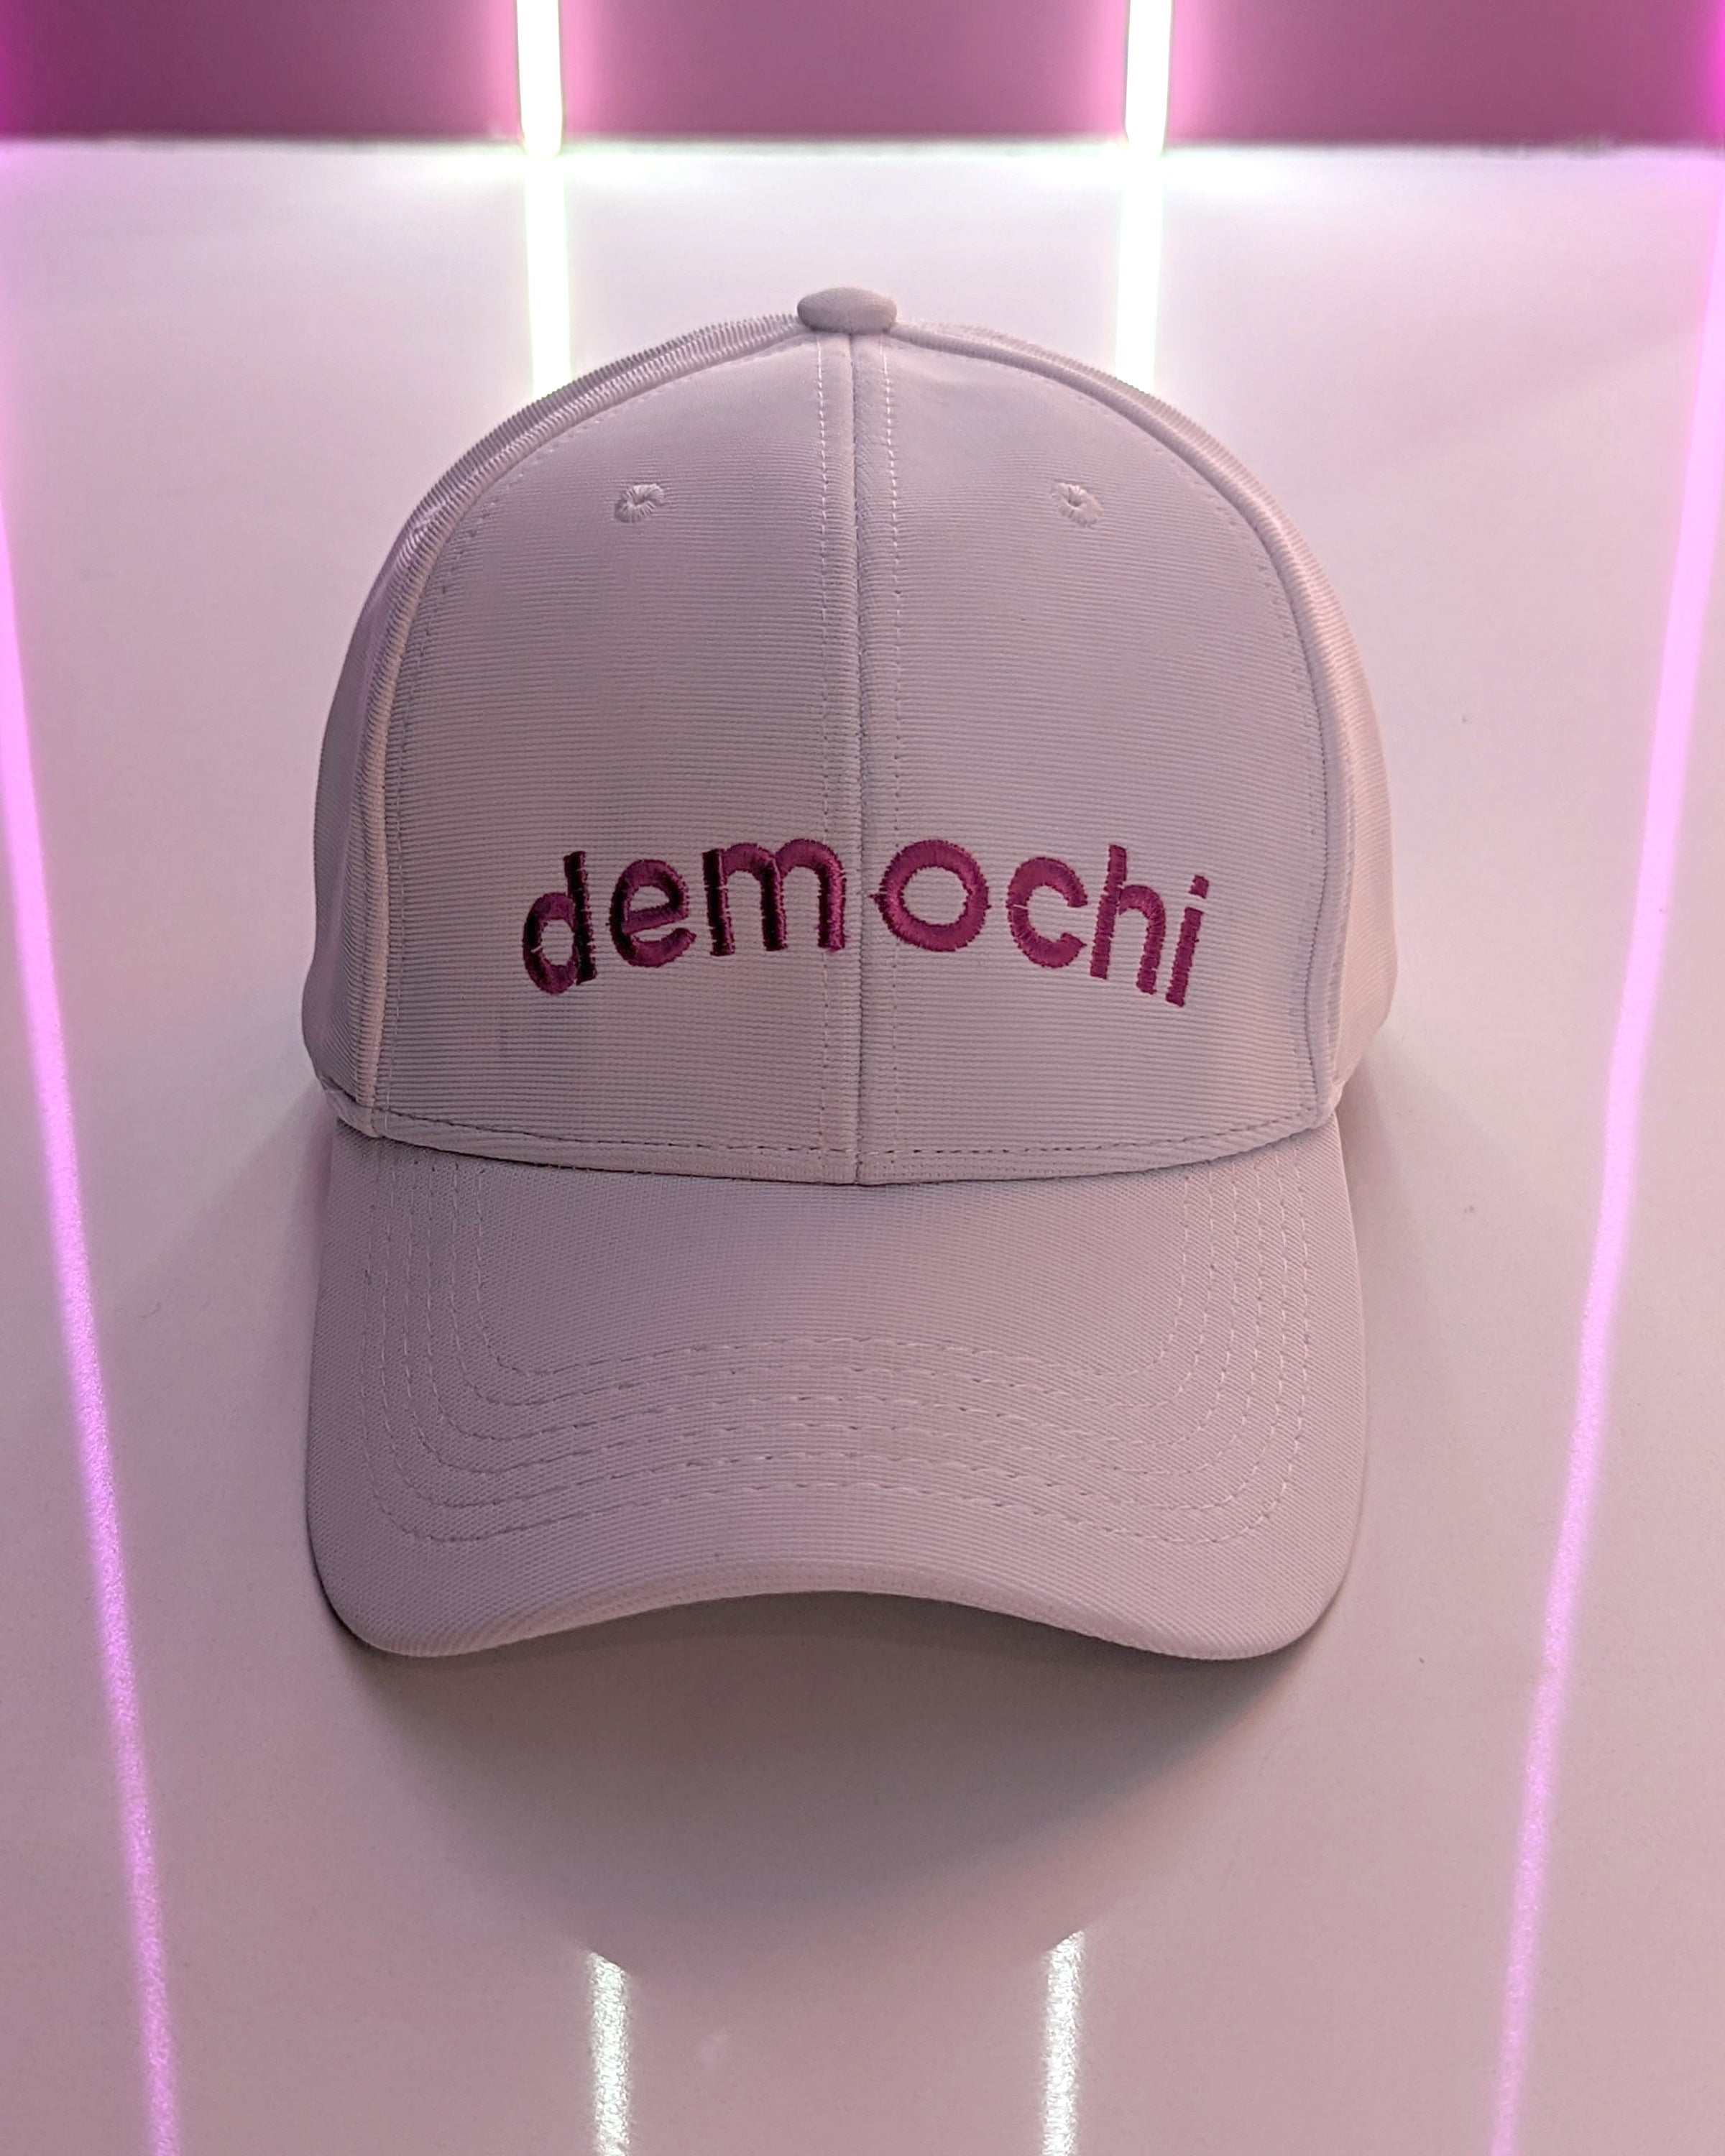 Demochi Cap